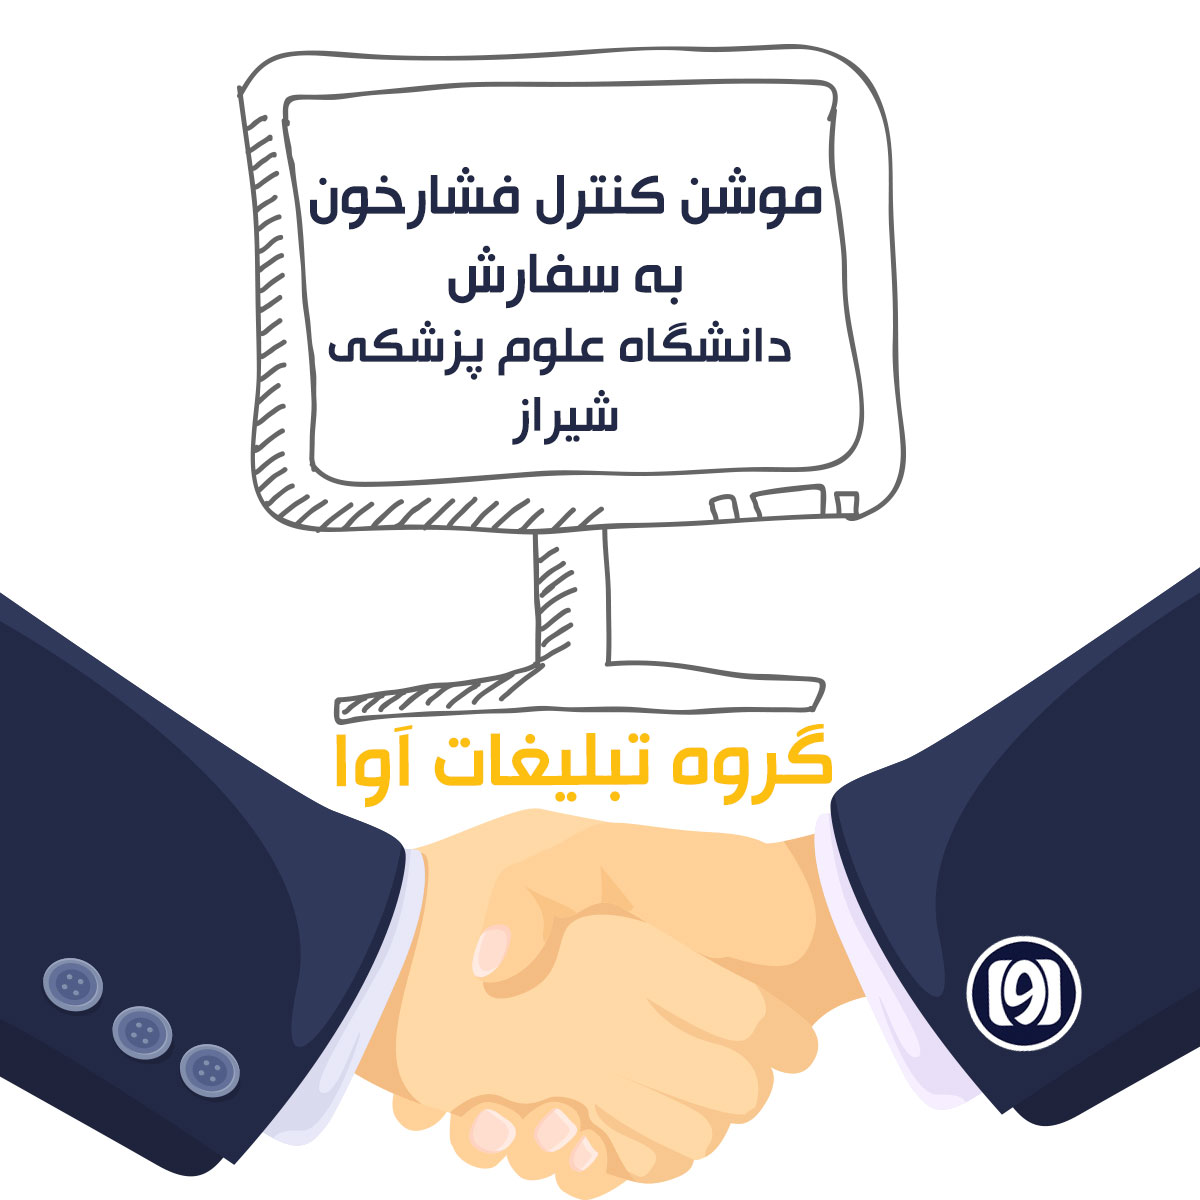 بسیج ملی کنترل فشارخون با همکاری دانشگاه علوم پزشکی شیراز